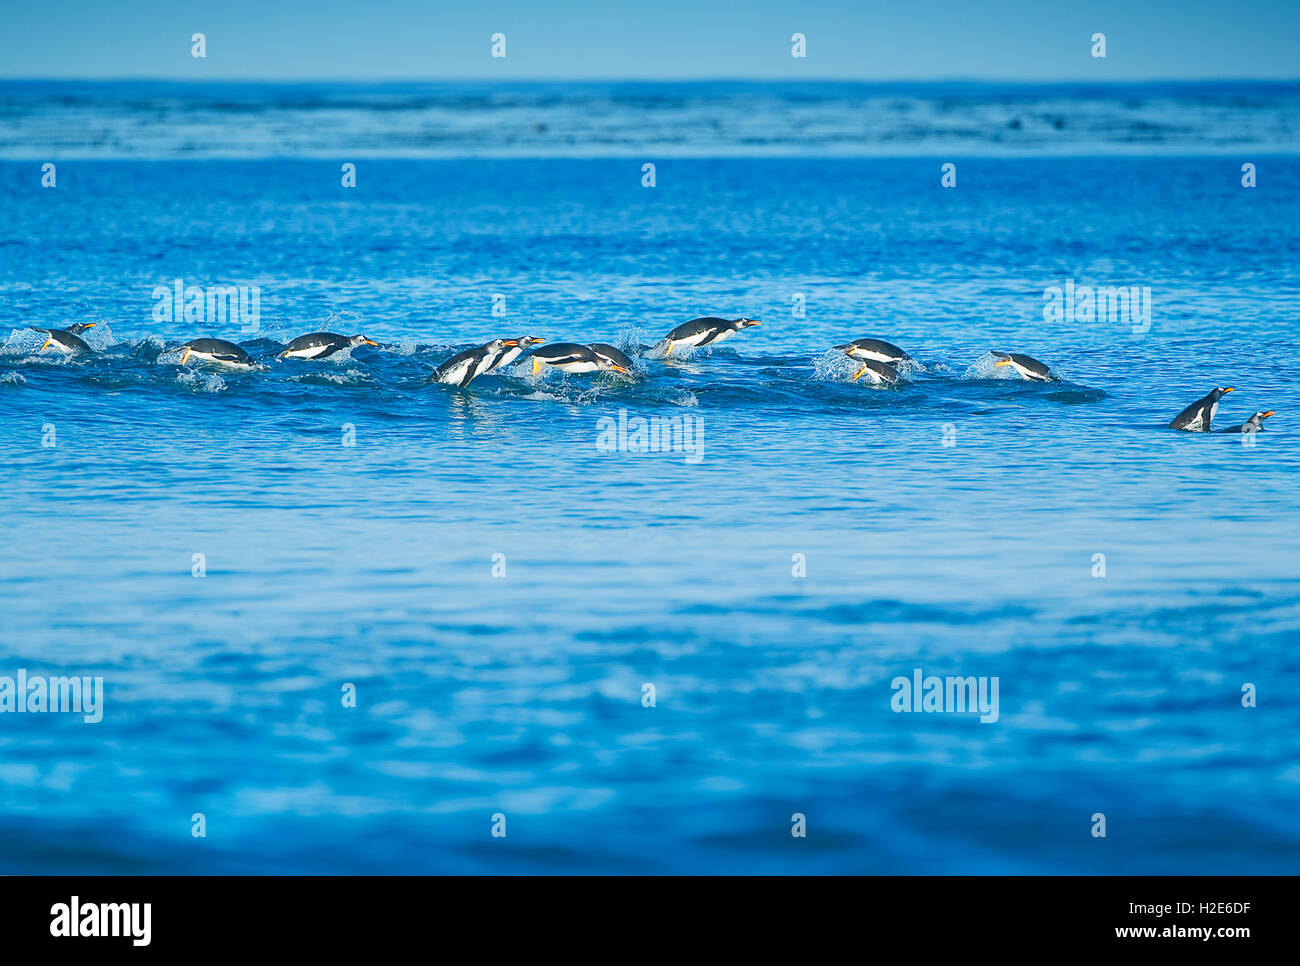 Manchots papous (Pygoscelis papua papua) natation, sea lion island, îles Falkland, l'atlantique sud Banque D'Images